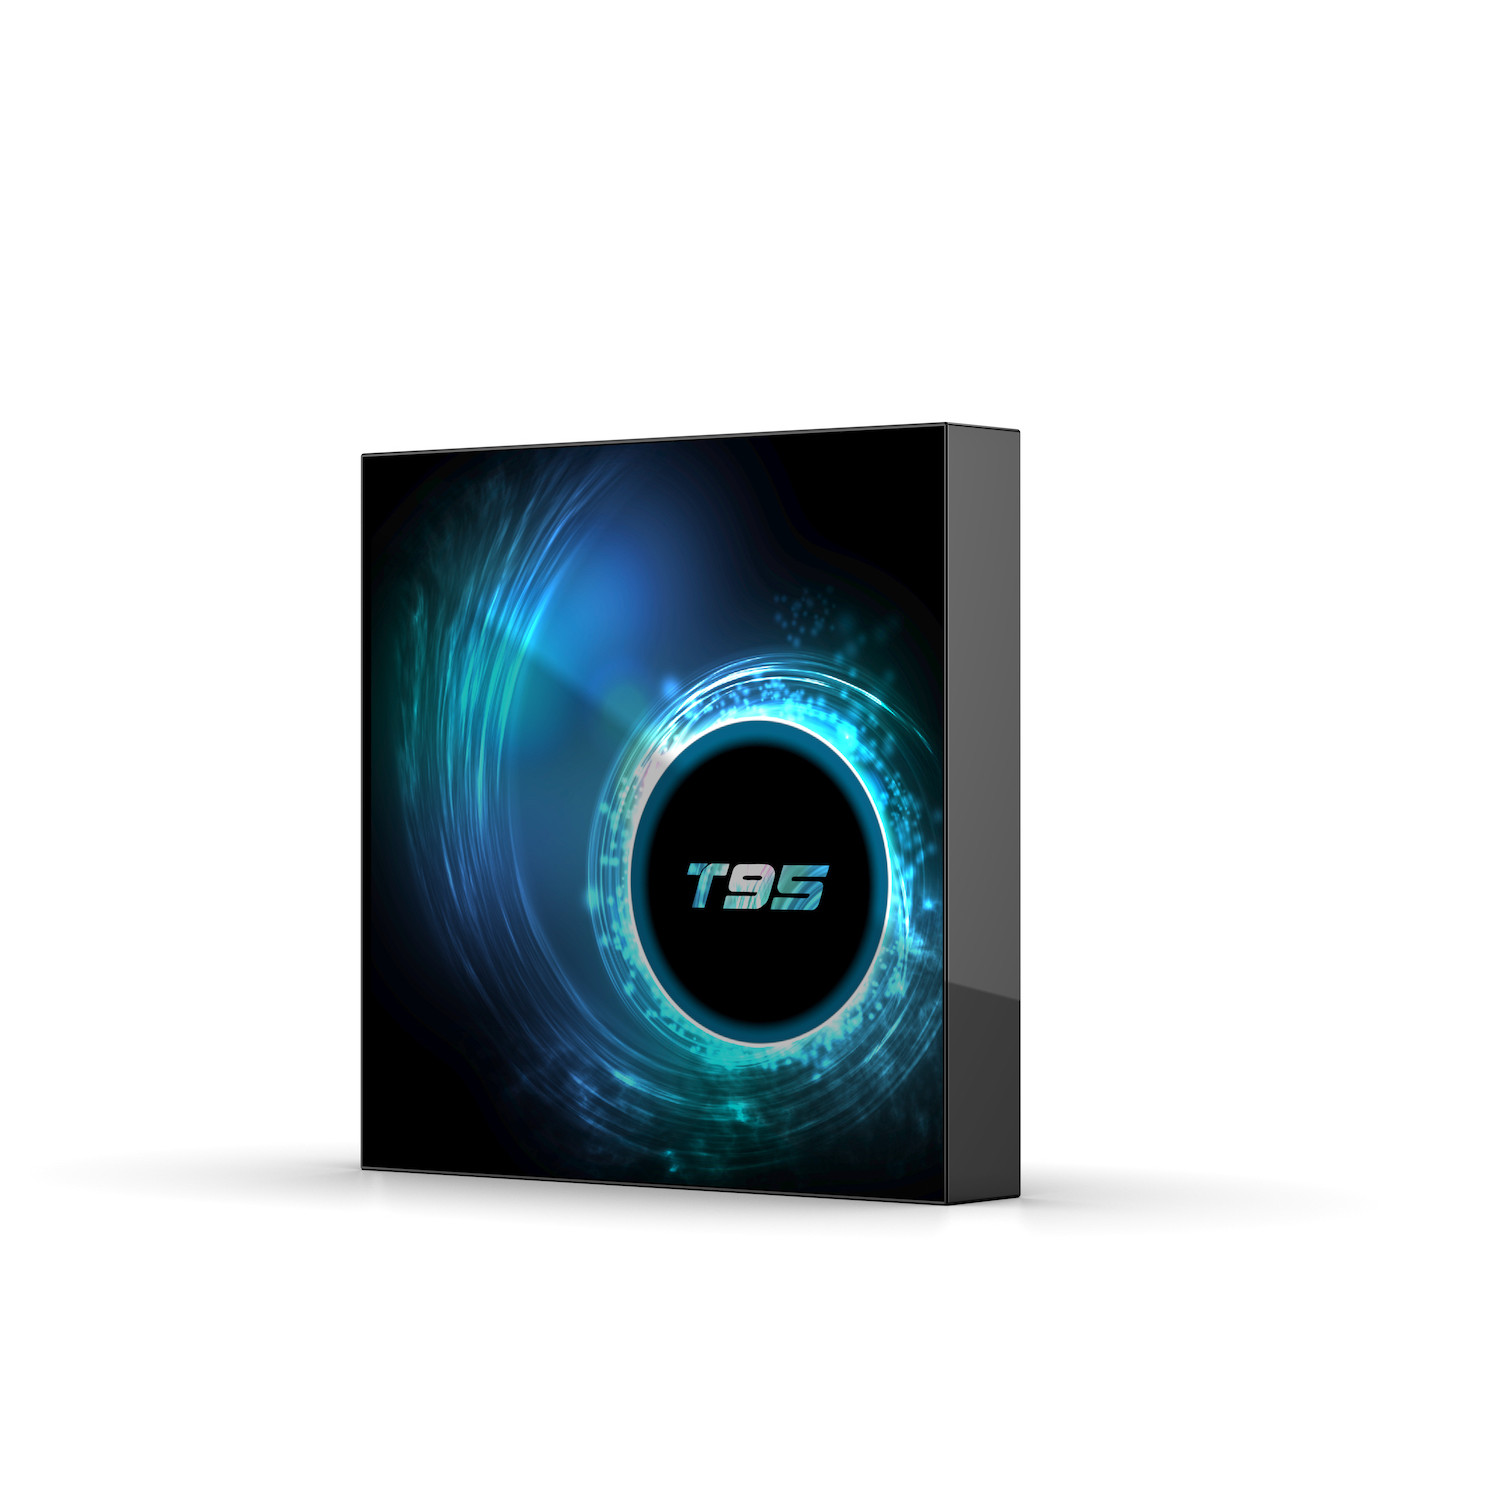 Tivi box T95 hệ điều hành Android 10 RAM 4GB  ROM 32GB  cài sẵn bộ ứng dụng giải trí miễn phí